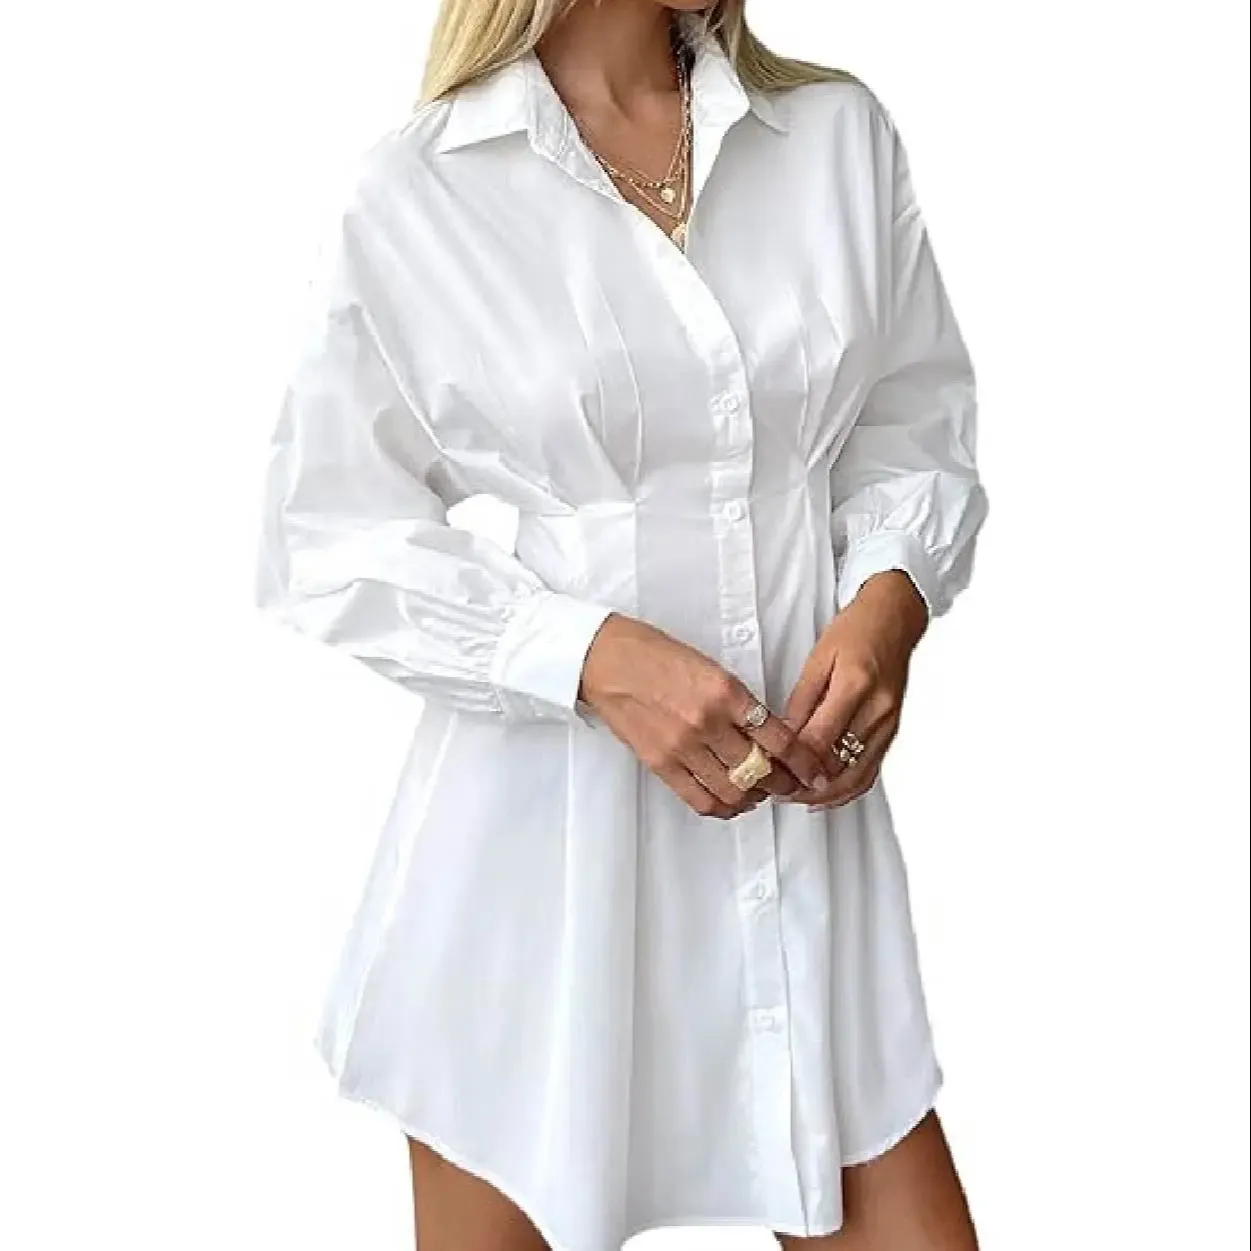 Novo vestido das mulheres Camisa francesa vestido cintura alta branco casual com saia curta vestido A-line pequeno